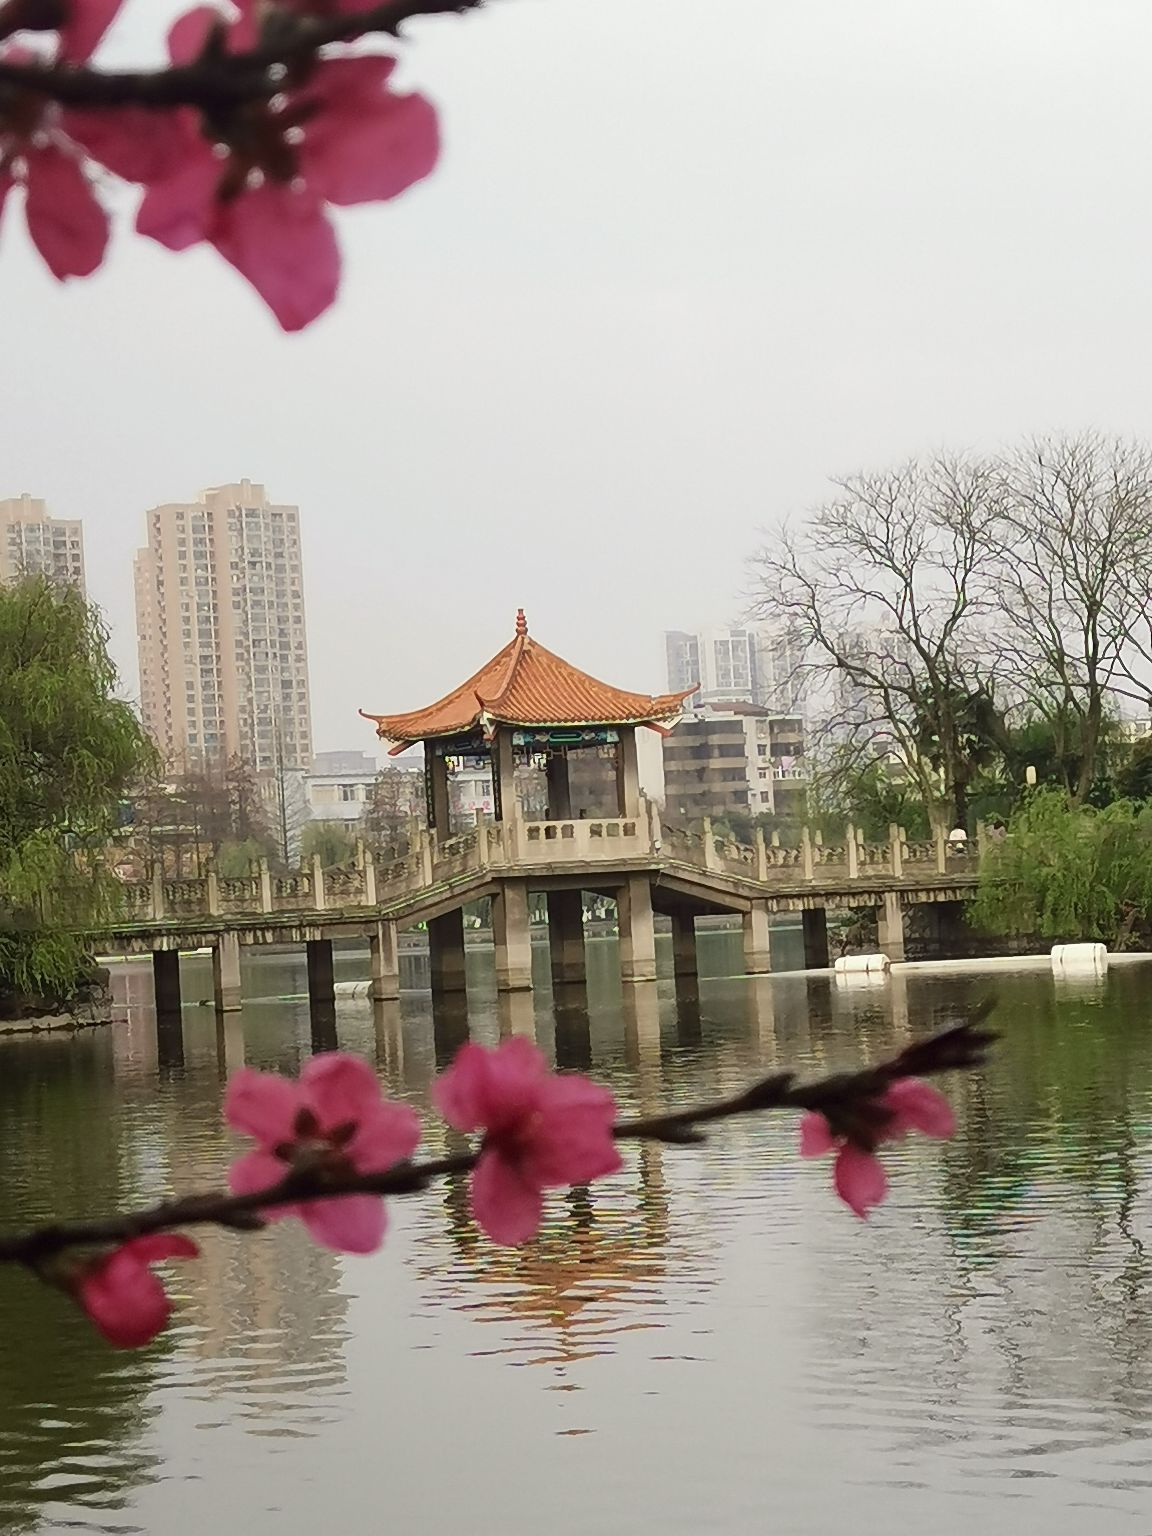 荆州市沙市中山公园春天美如画，樱花、桃花、海棠花一应俱全，在春季的周末带上家人前去踏青，还有滨江公园